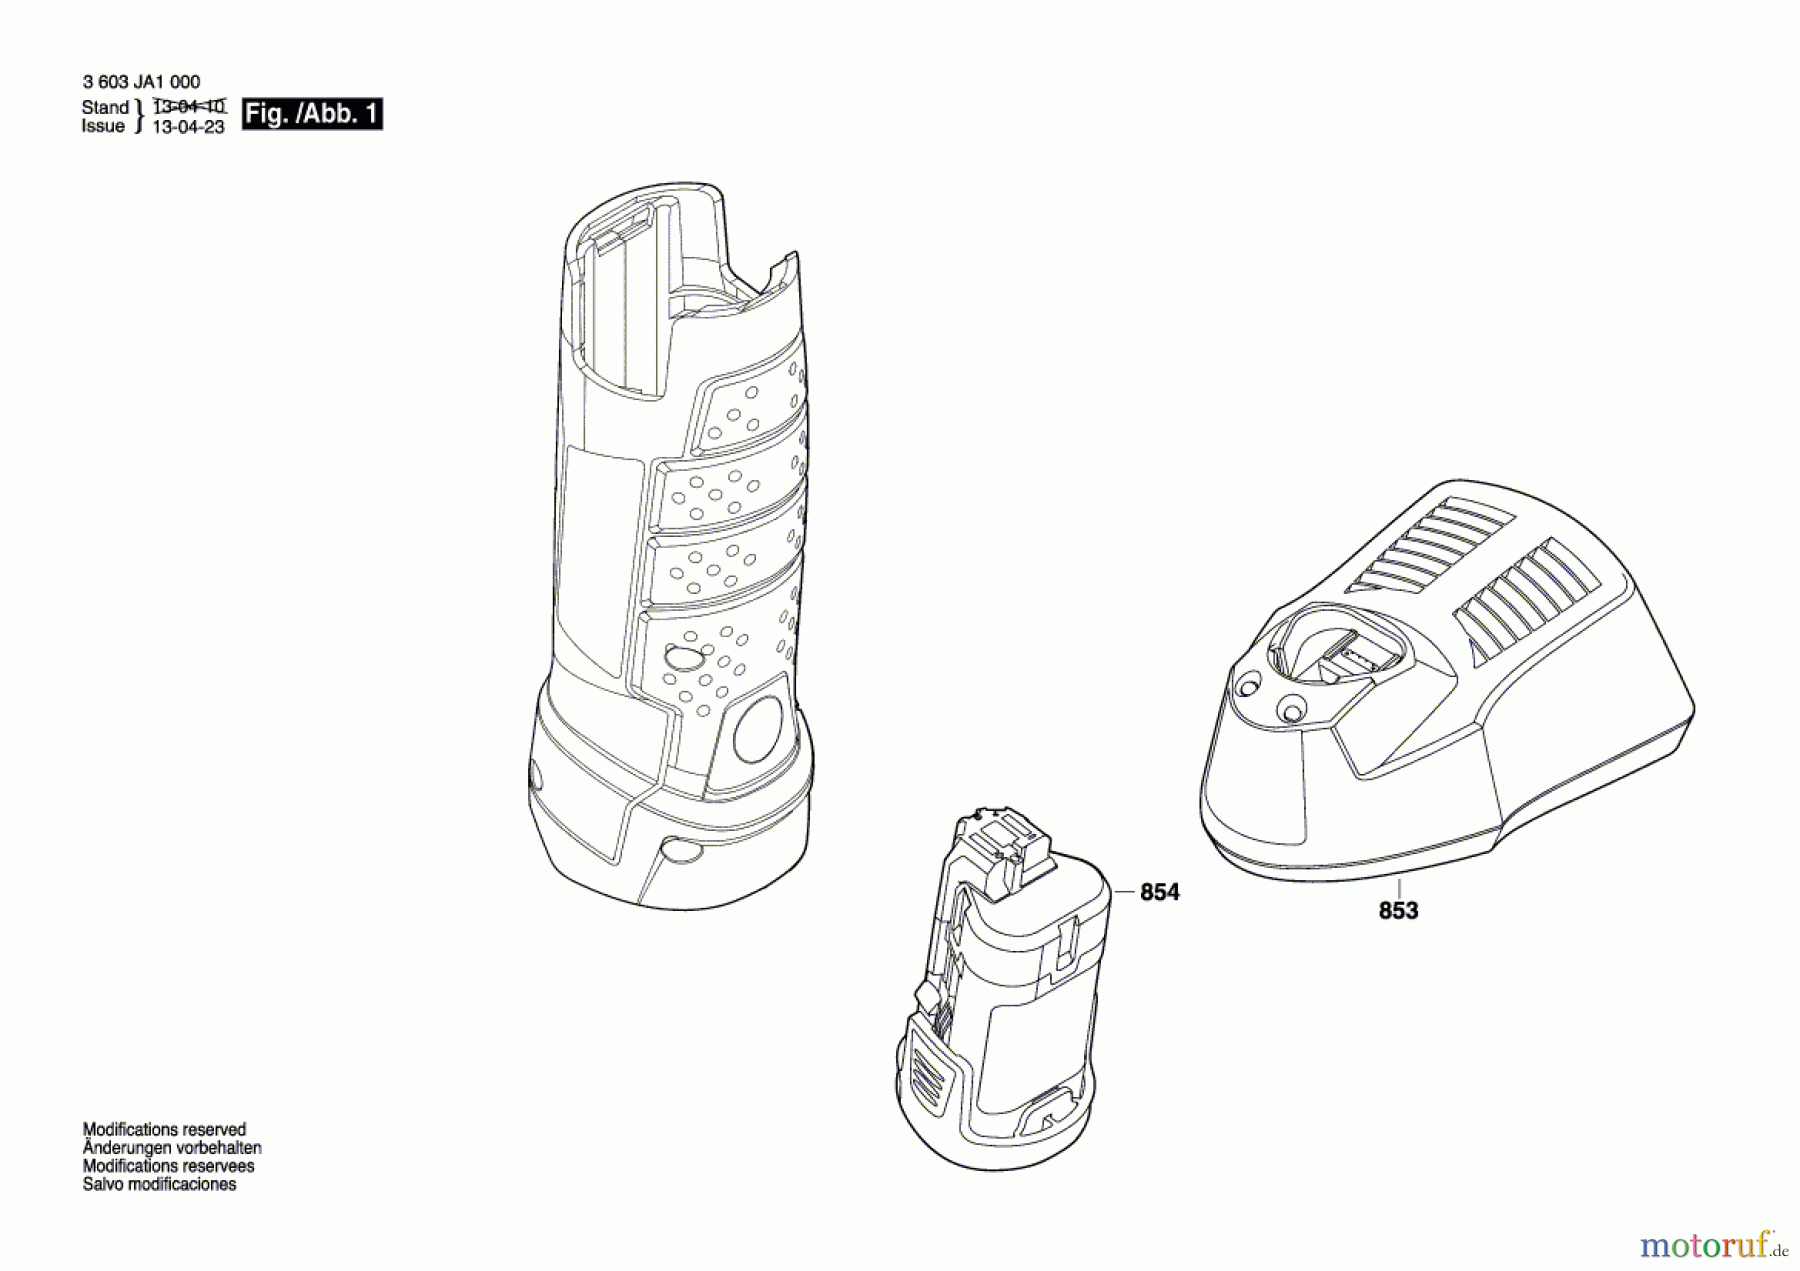  Bosch Werkzeug Taschenlampe PLI 10,8 LI Seite 1